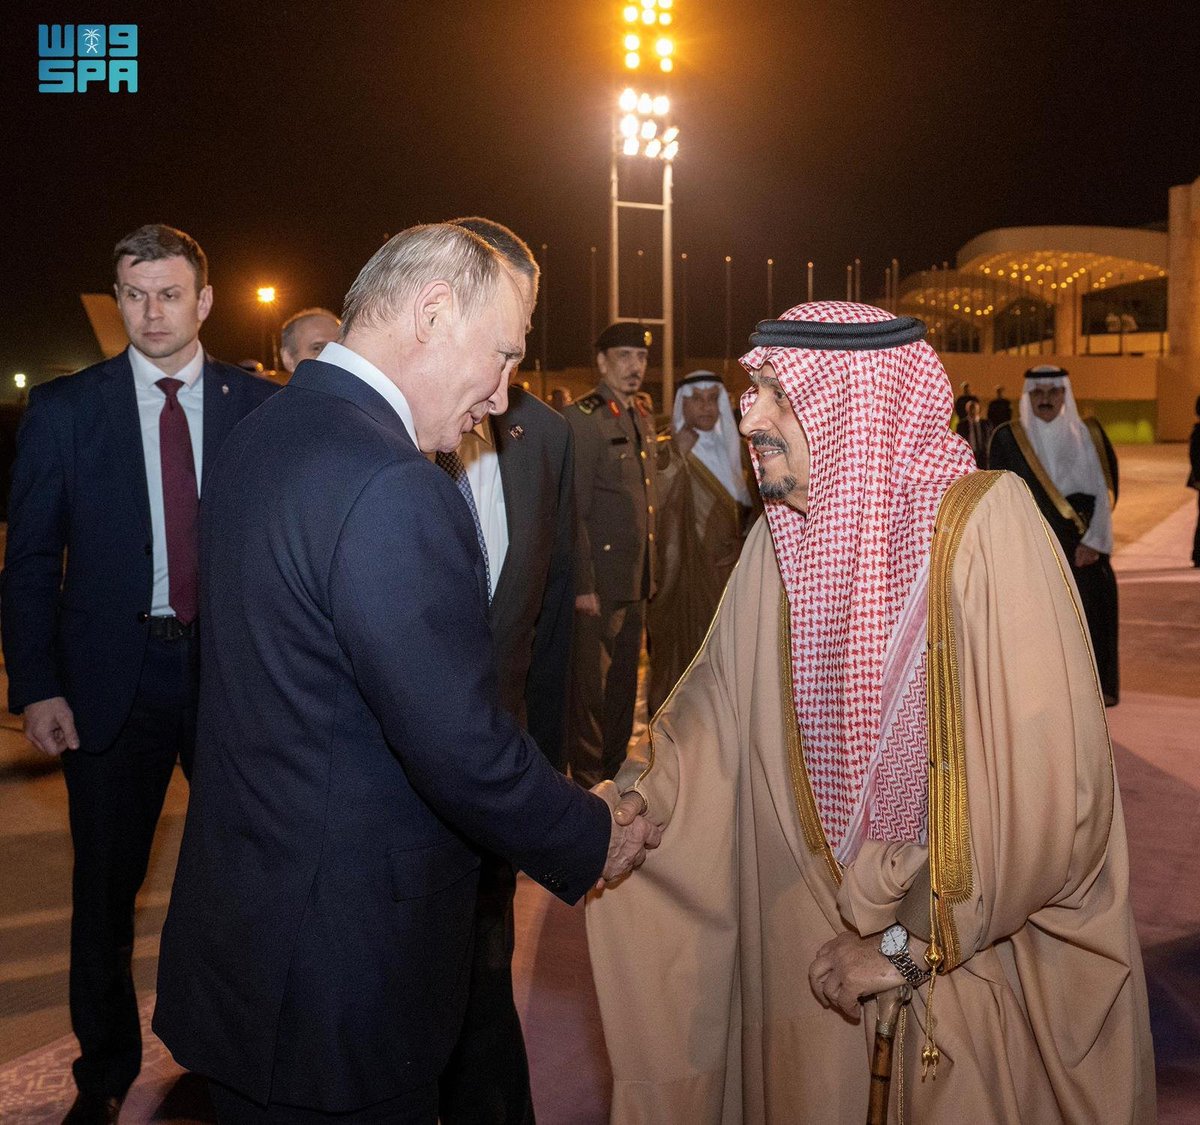 الرئيس الروسي يغادر الرياض